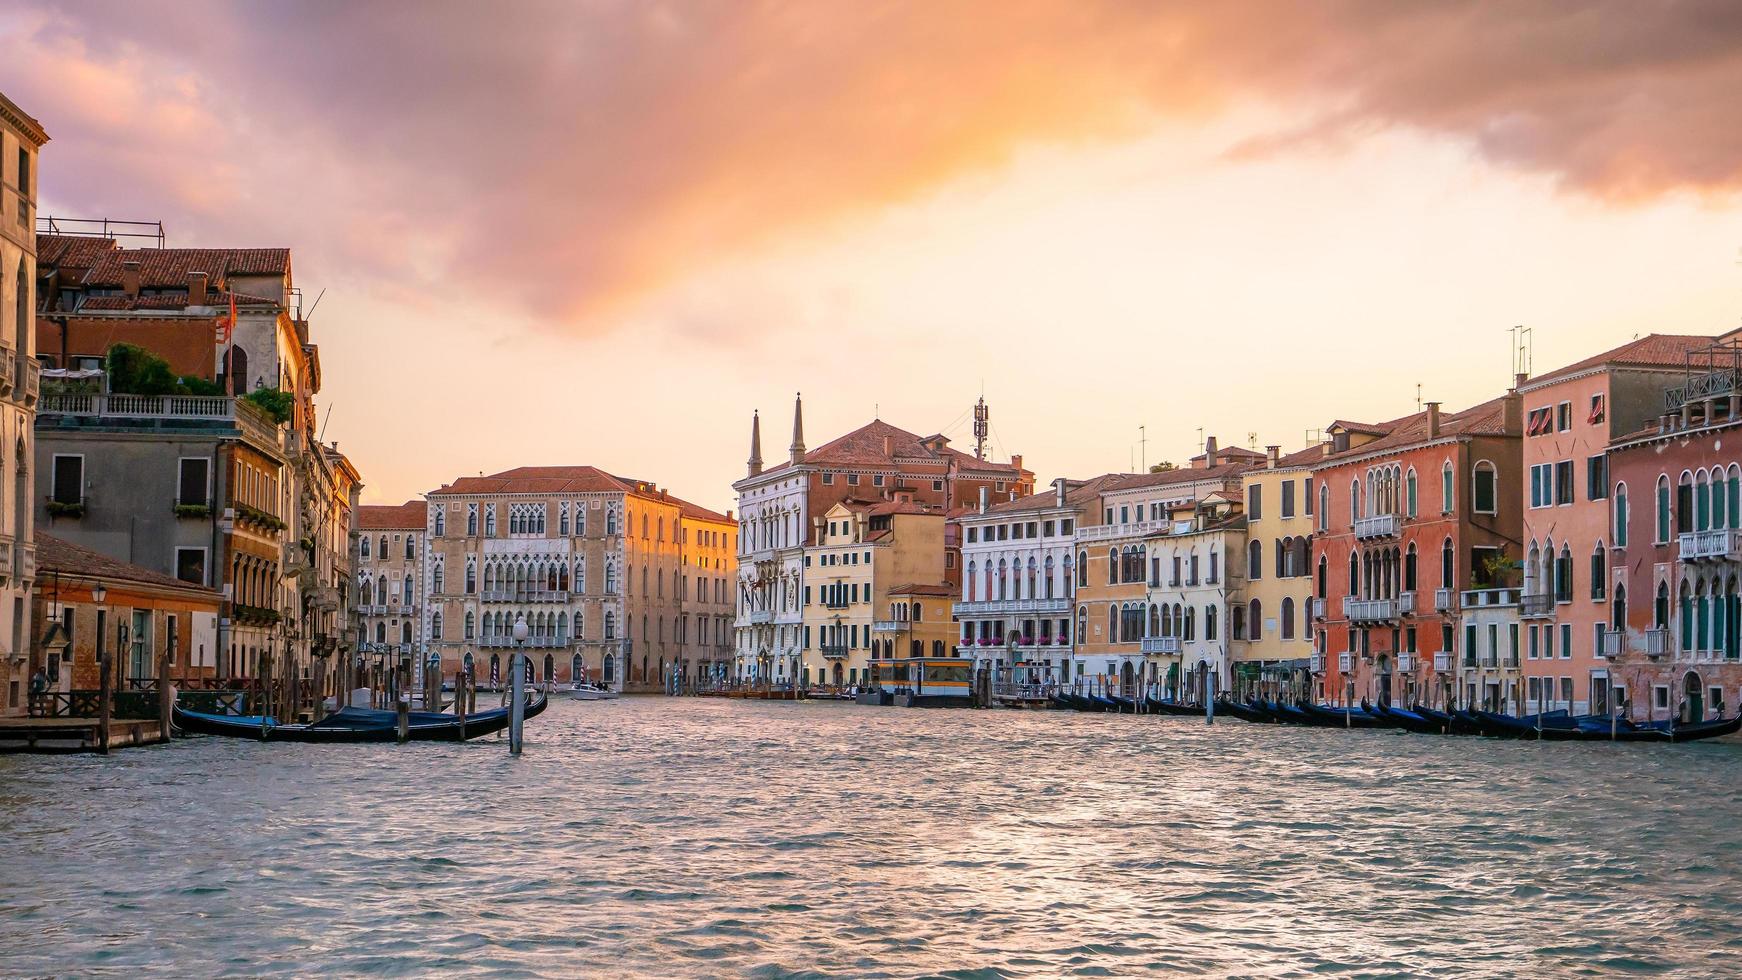 Image de paysage urbain de Venise, Italie photo